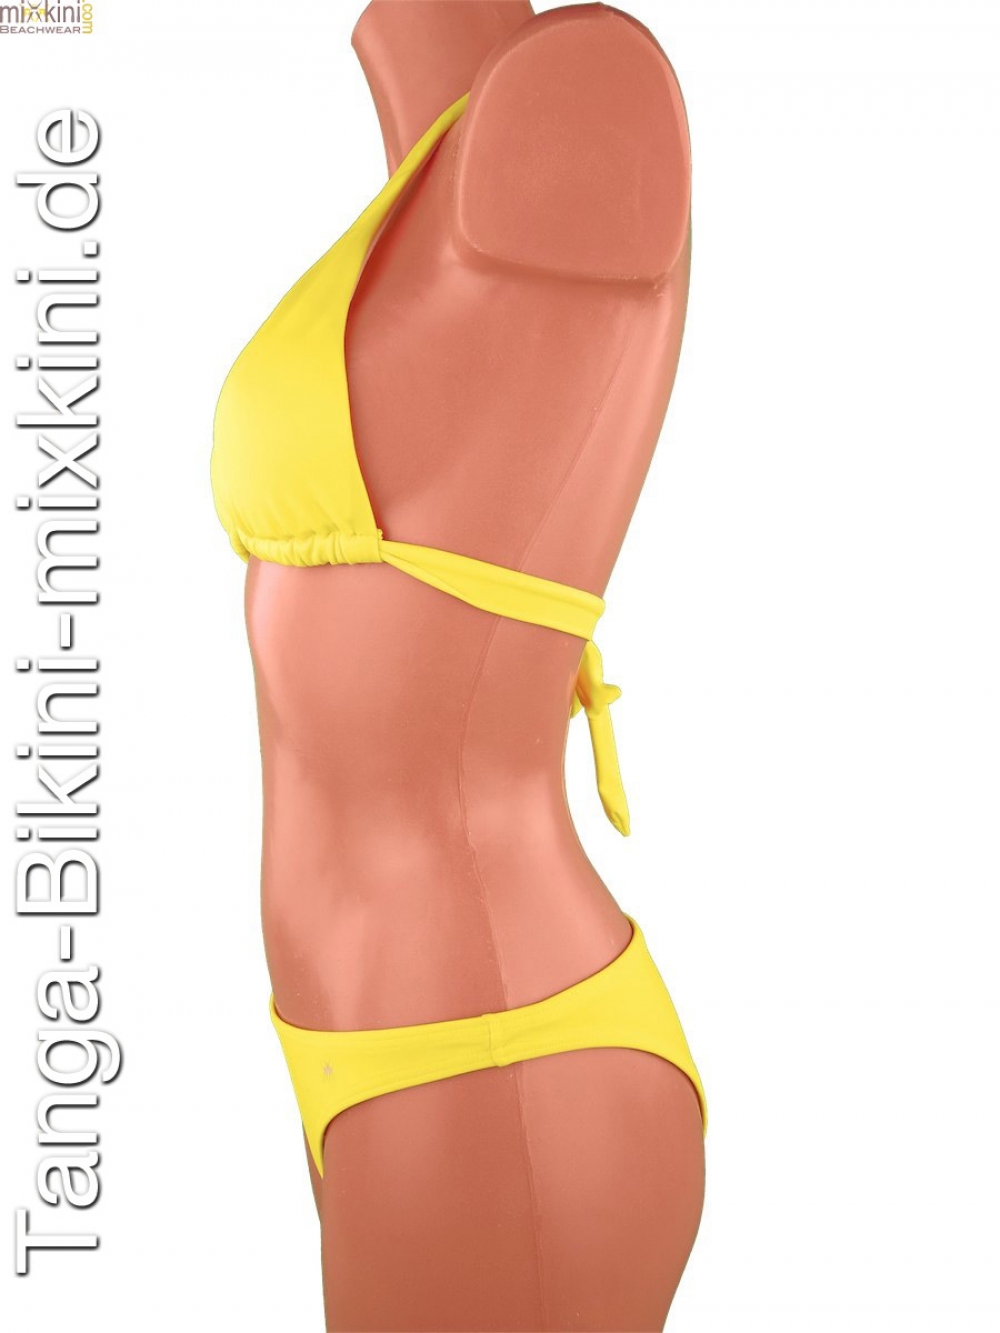 bikini kombi gelb, schönen gelben bikini kaufen - mixkini beachwear